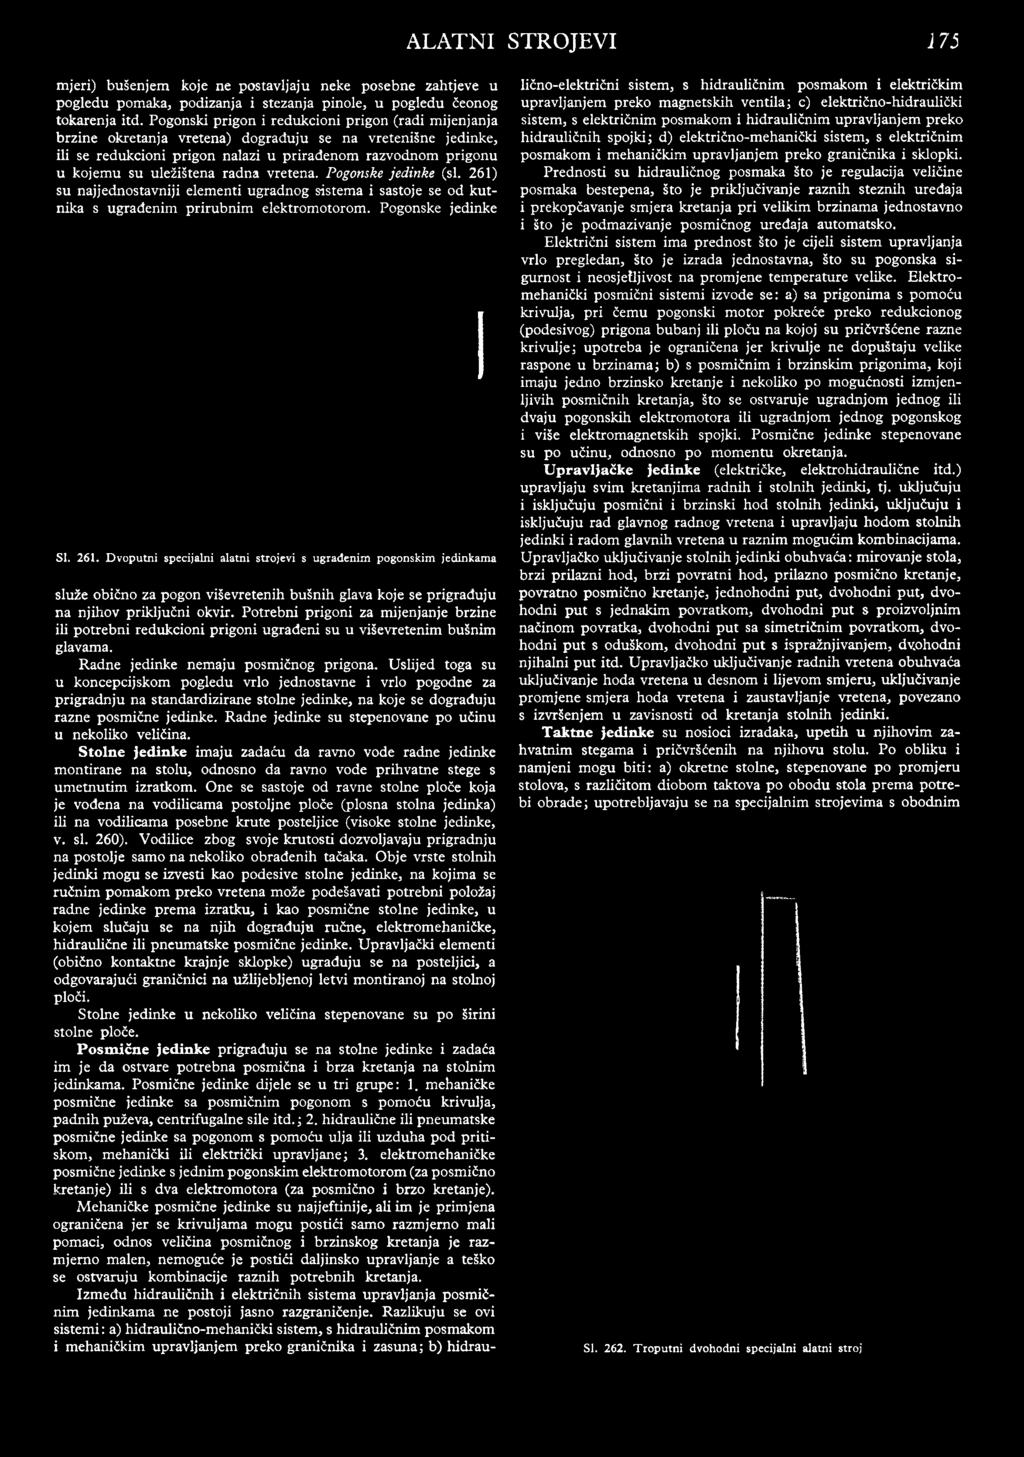 uležištena radna vretena. Pogonske jedinke (si. 261)